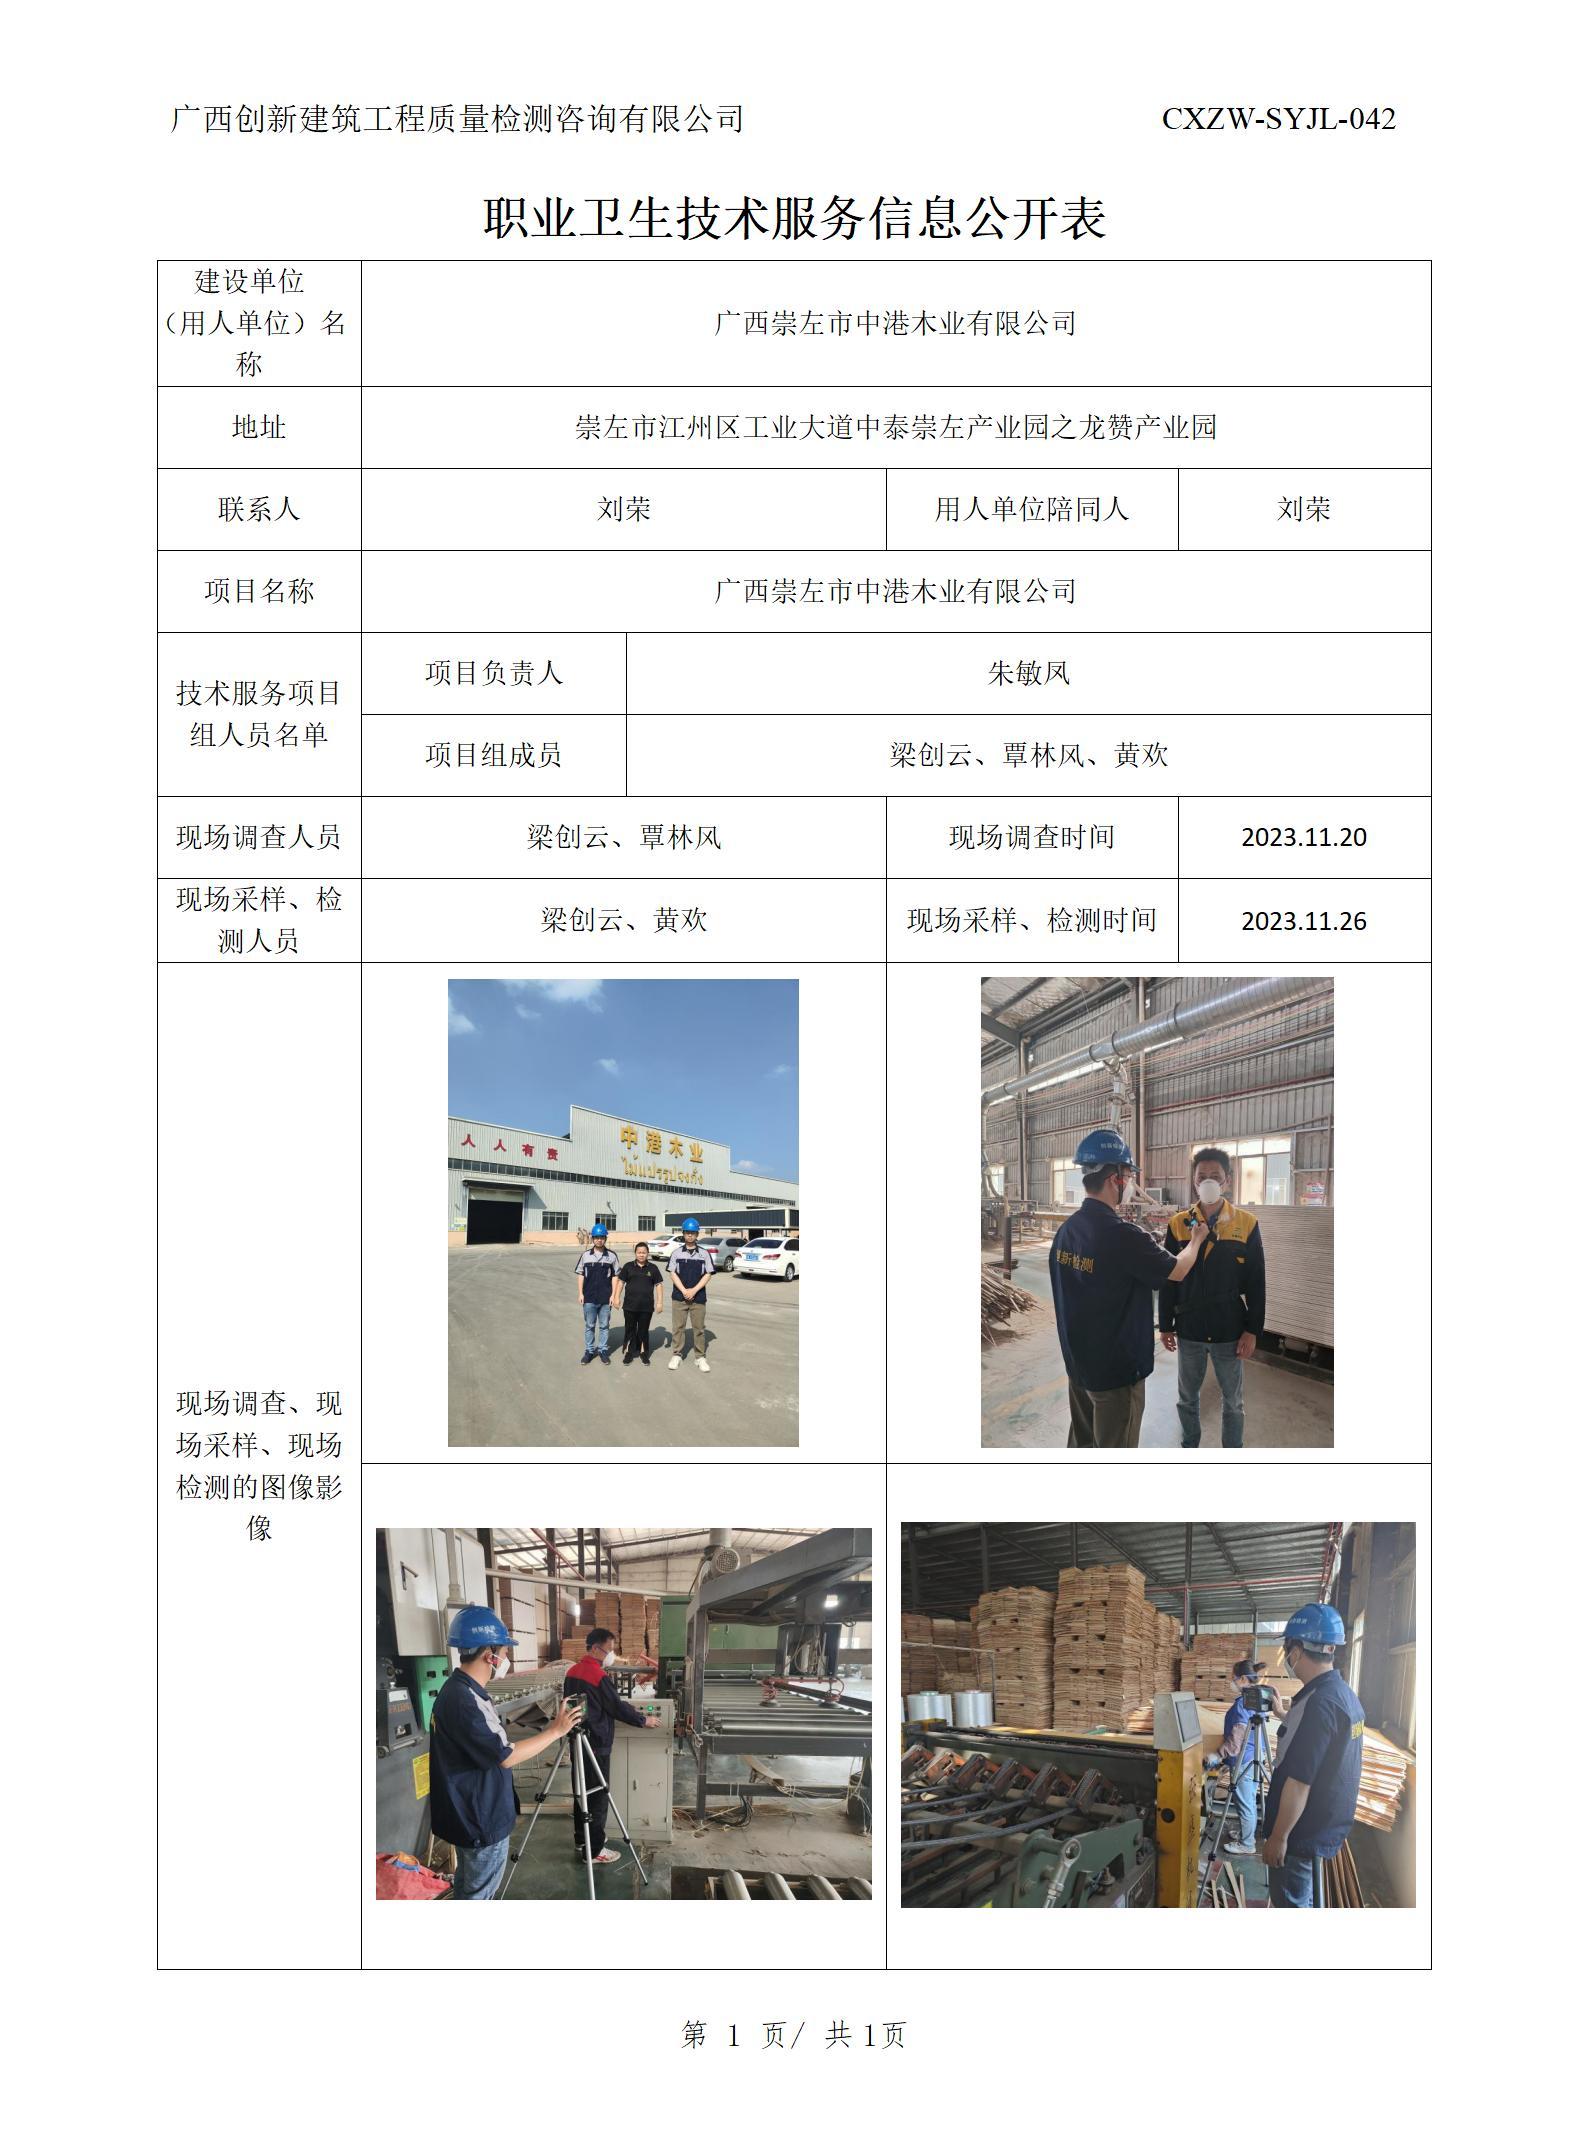 【职业卫生信息公开】广西崇左市中港木业有限公司